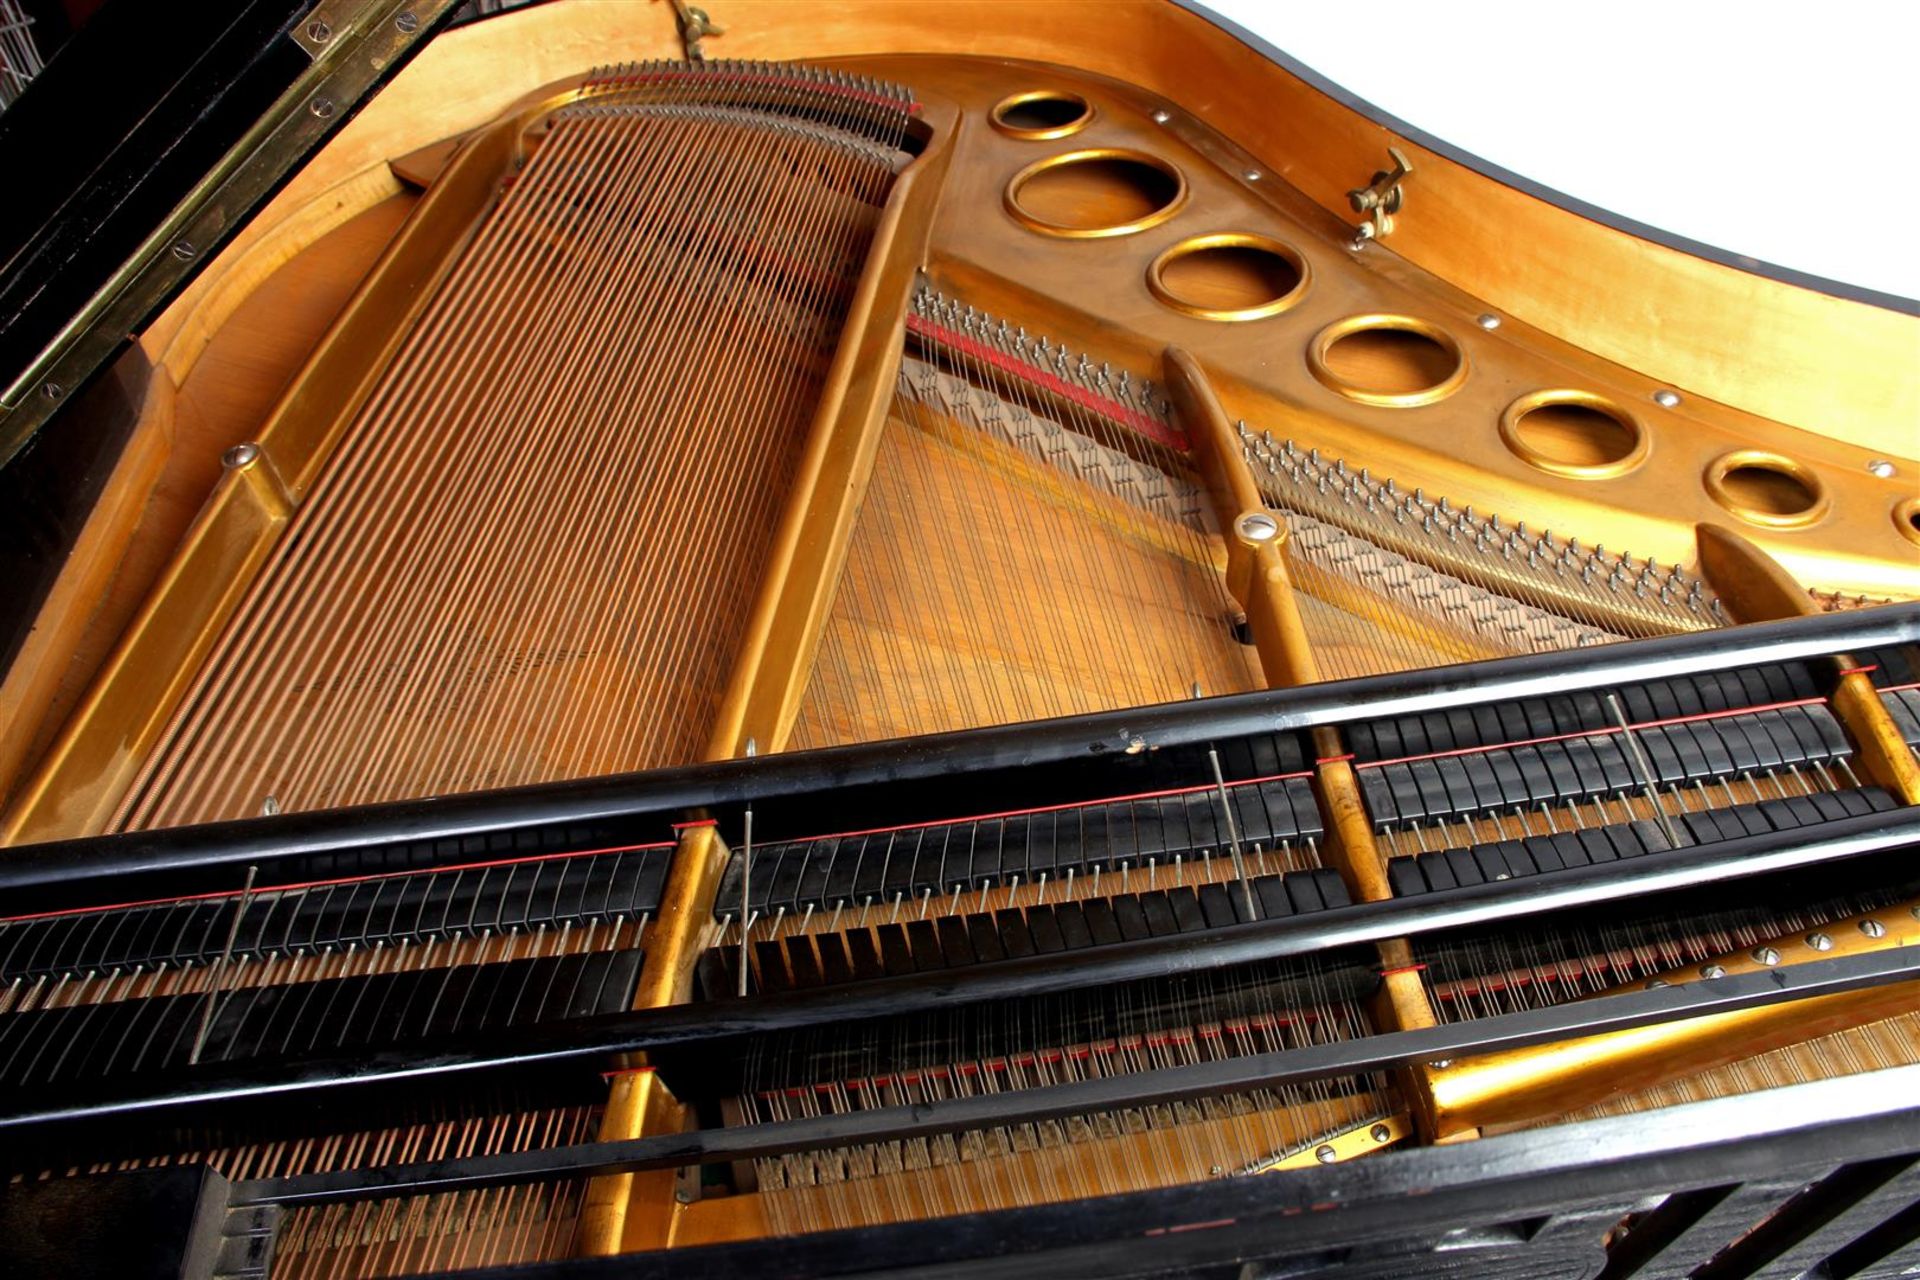 Bösendorfer grand piano - Image 6 of 13